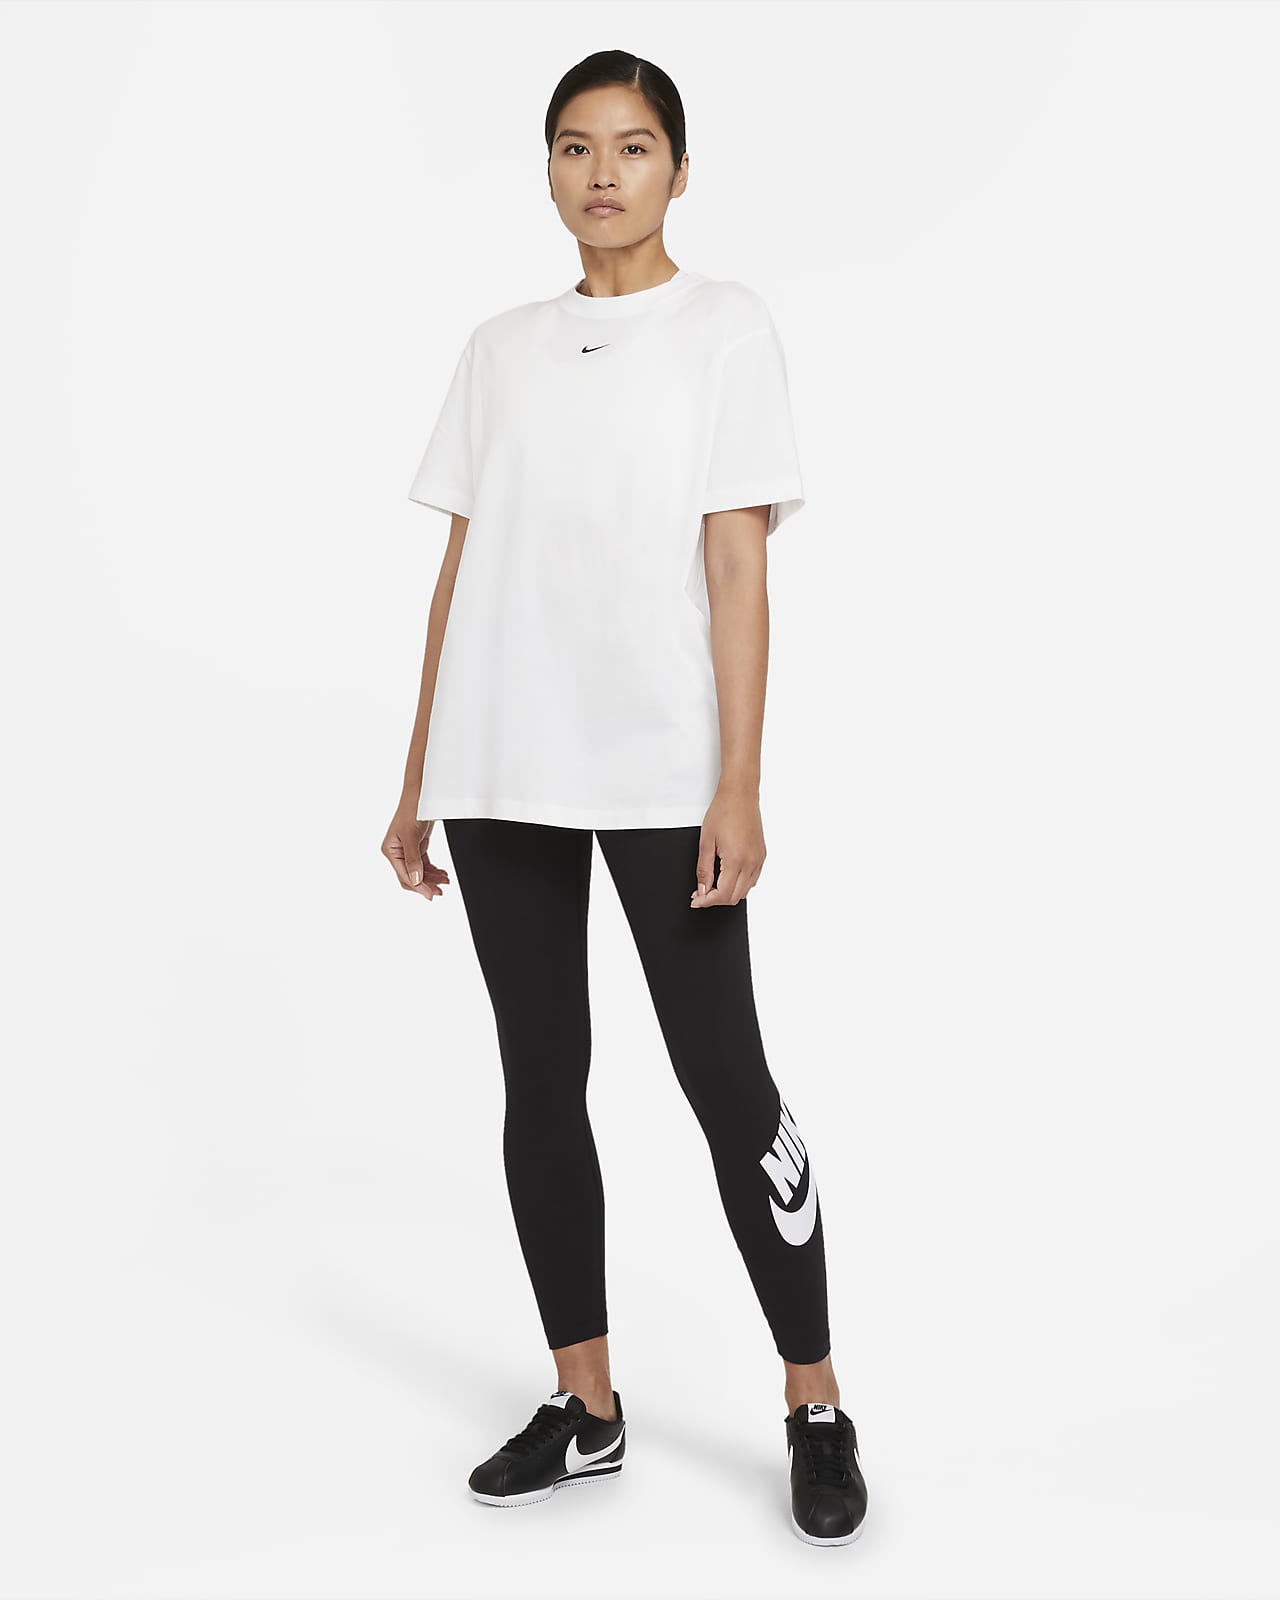 Nike Street Style Plain Cotton Logo Leggings Pants (478, CZ8529 010)